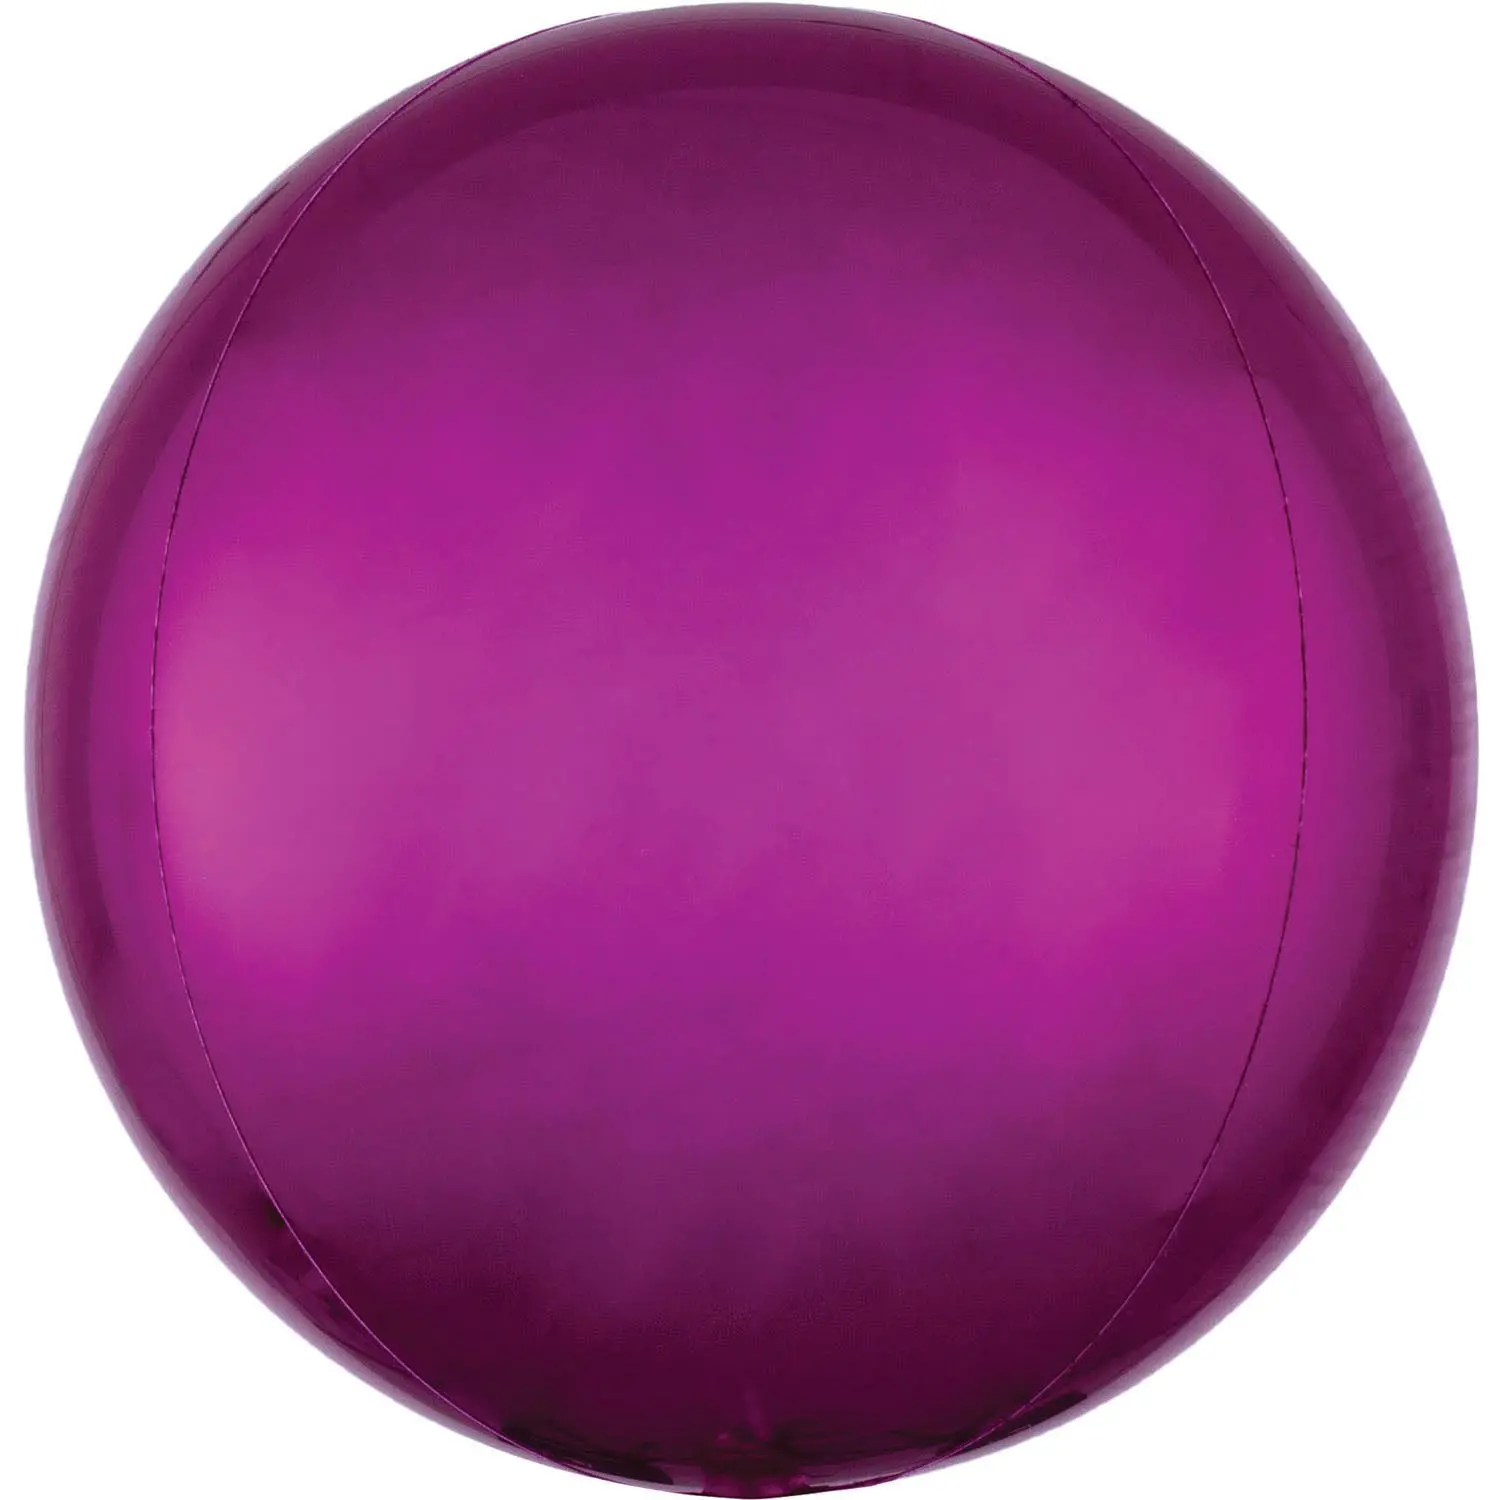 ORBZ sphere balloon - Fuchsia